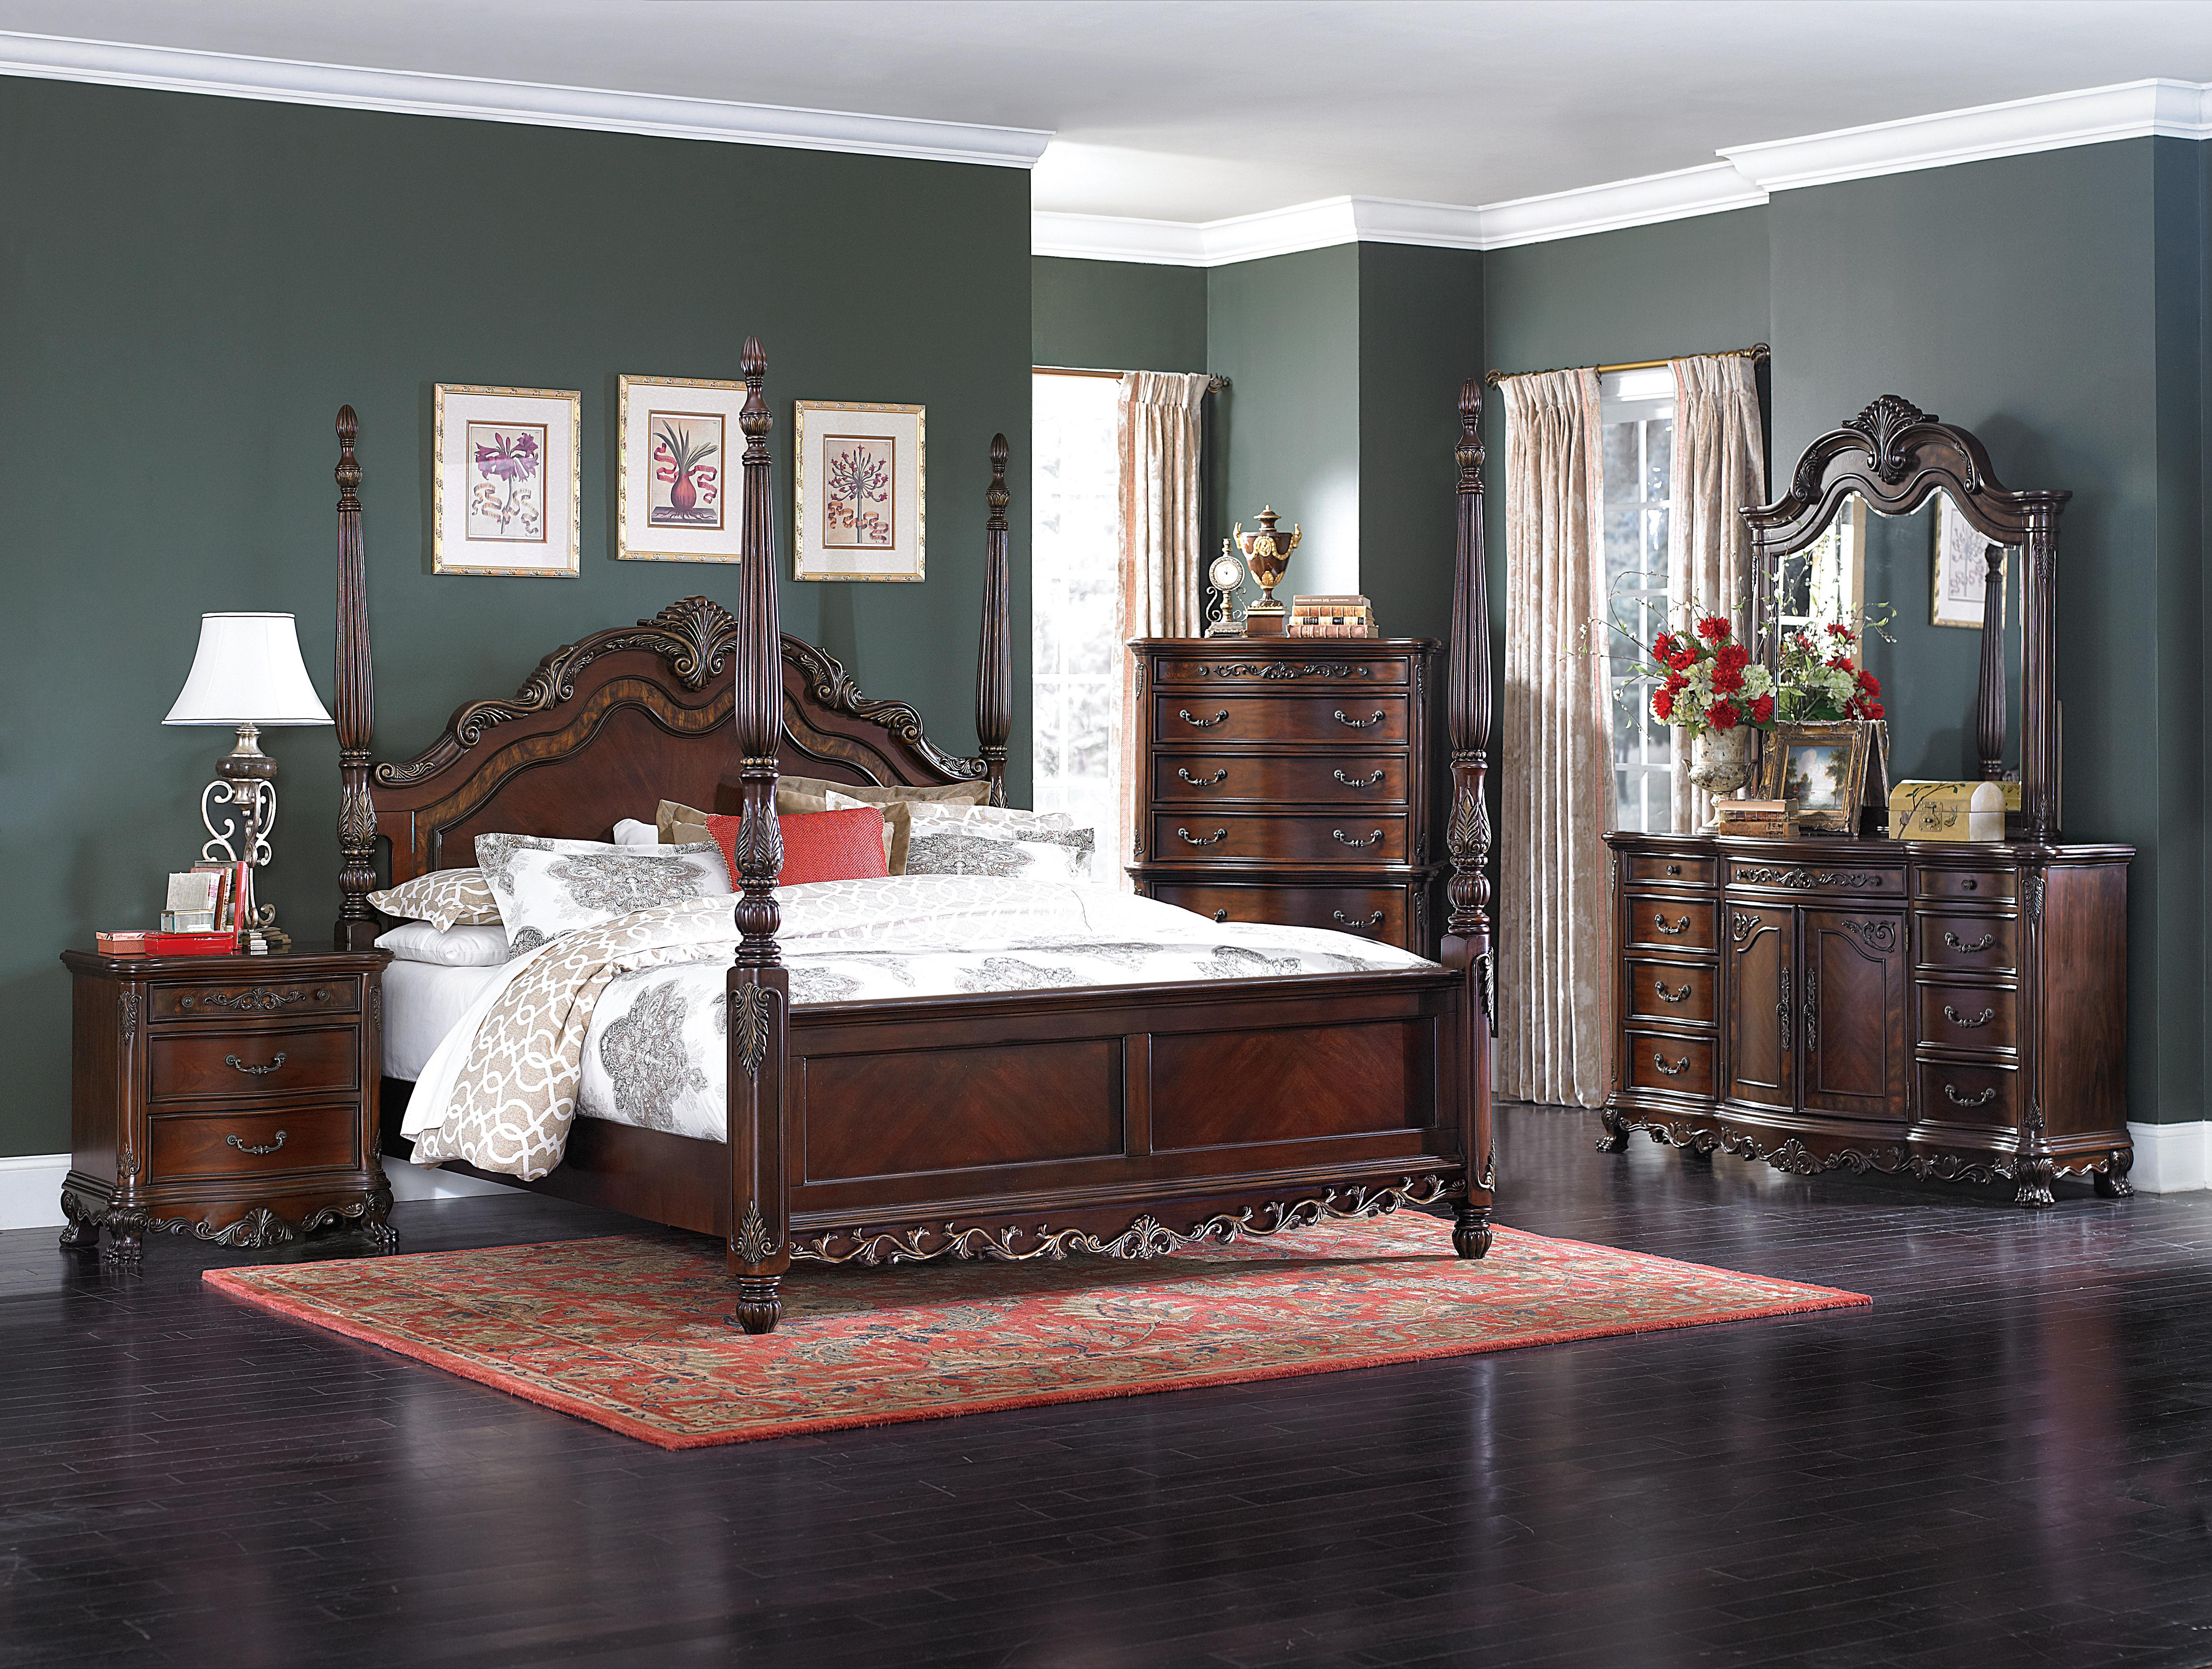 

    
Traditional Cherry Wood Queen Bedroom Set 5pcs Homelegance 2243-1* Deryn Park
